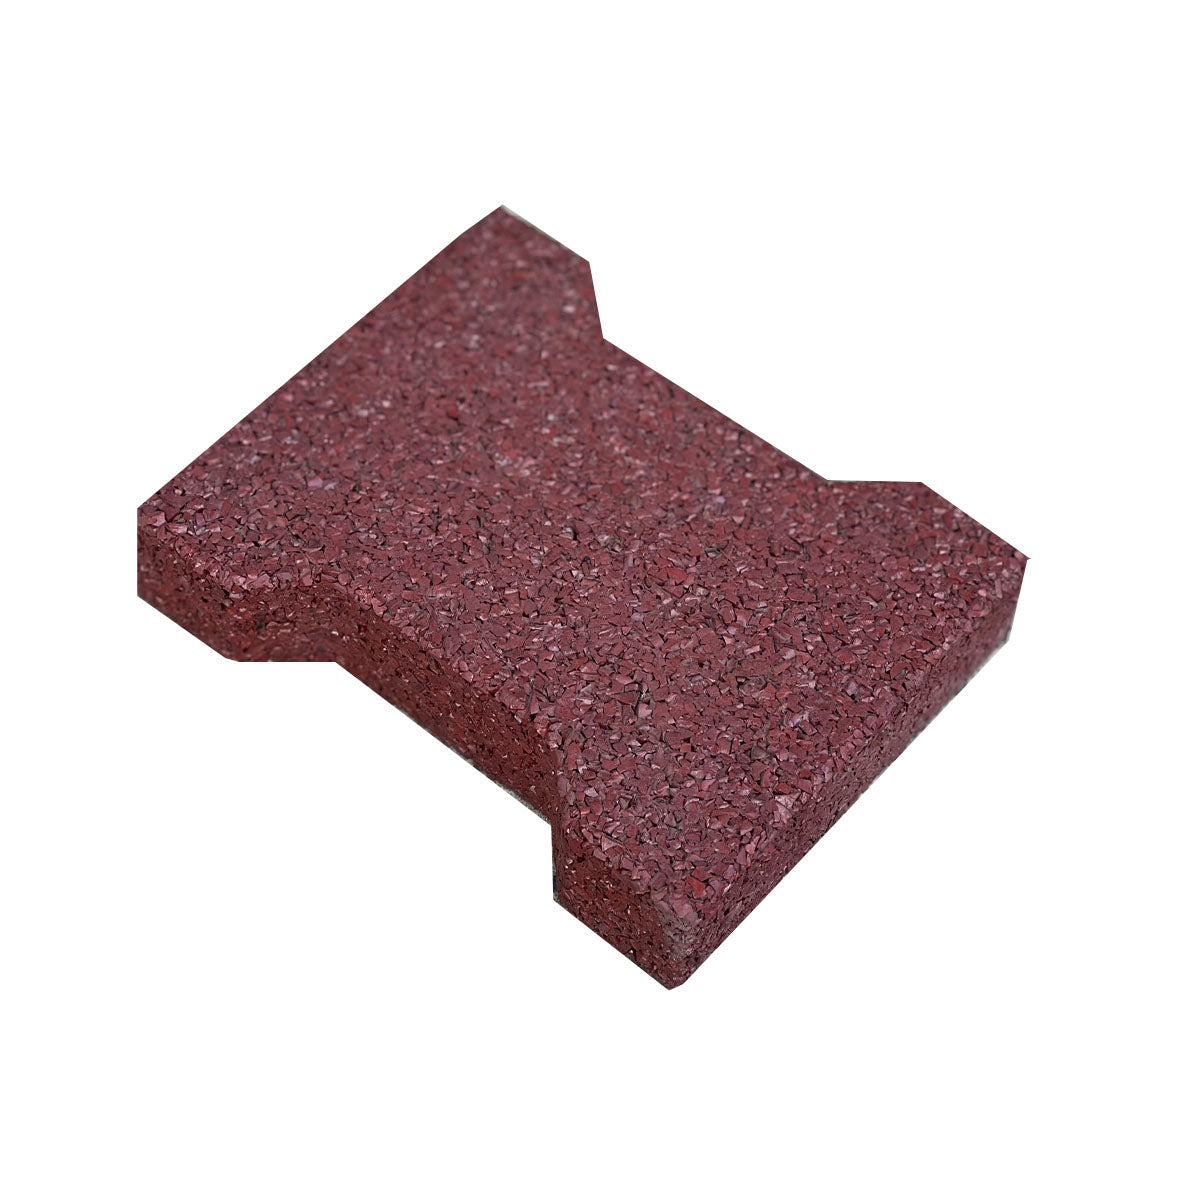 red rubber tile dog bone shape